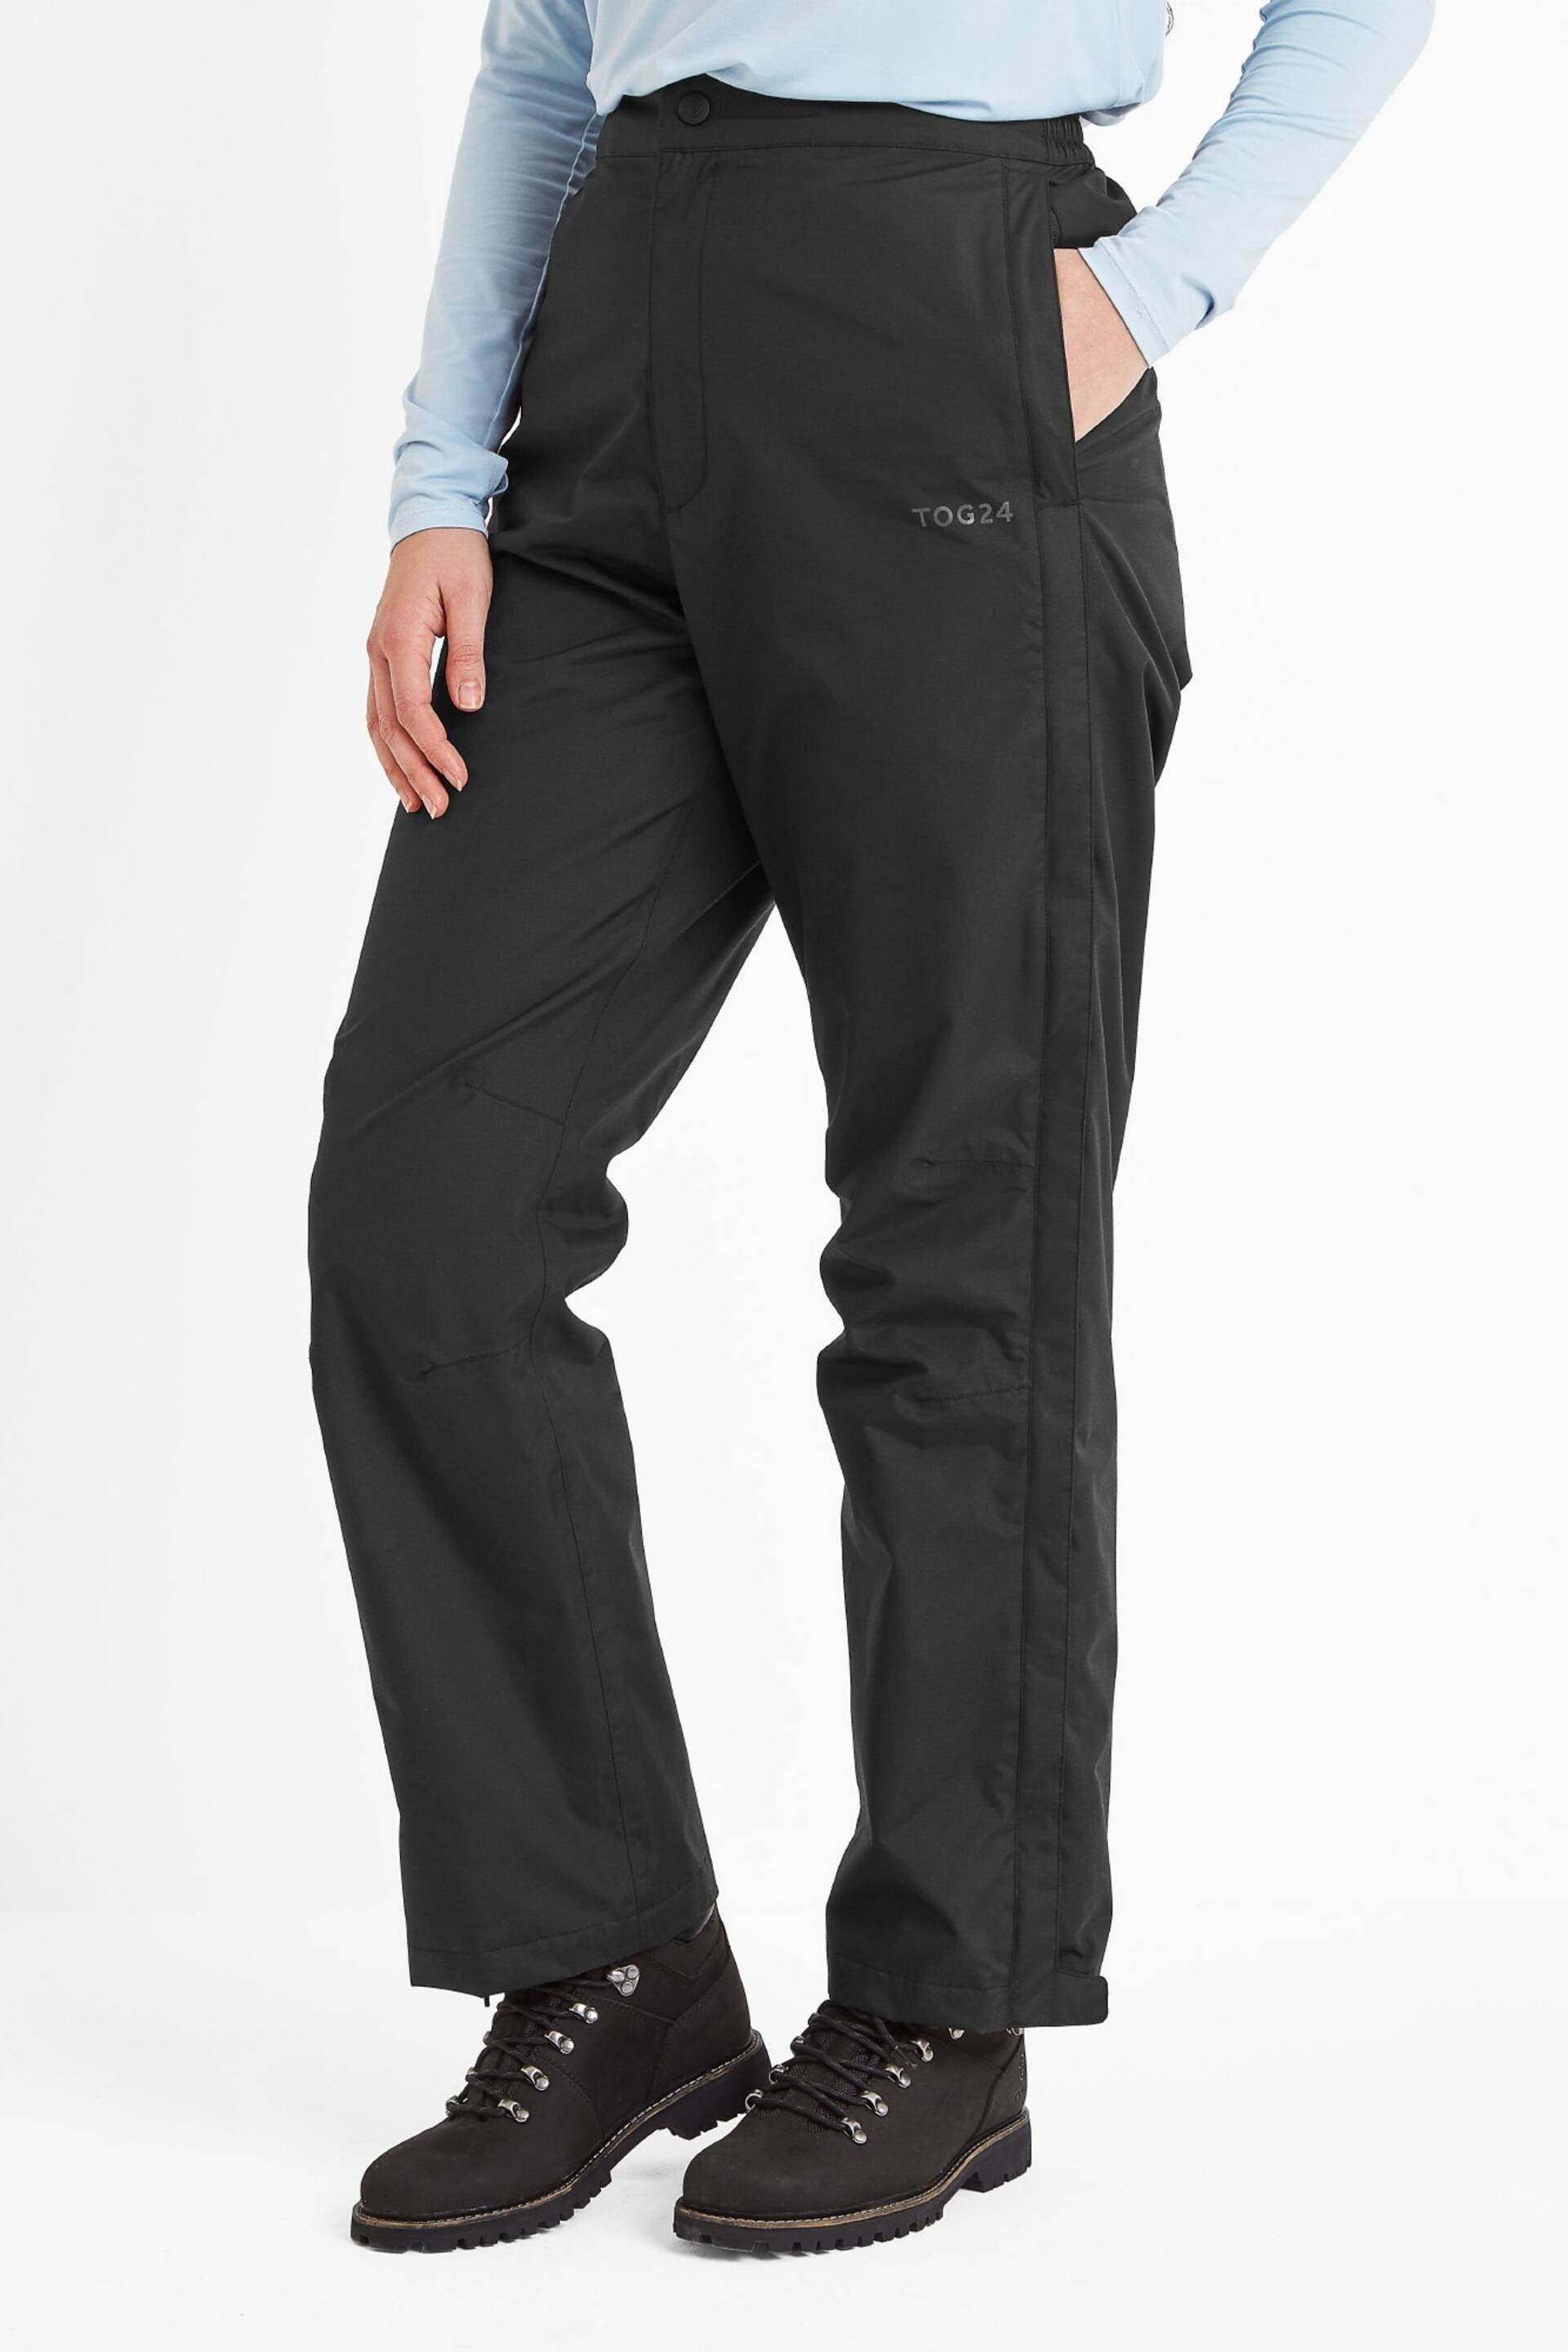 Tog 24 Black Wigton Waterproof Short Trousers - Image 1 of 5